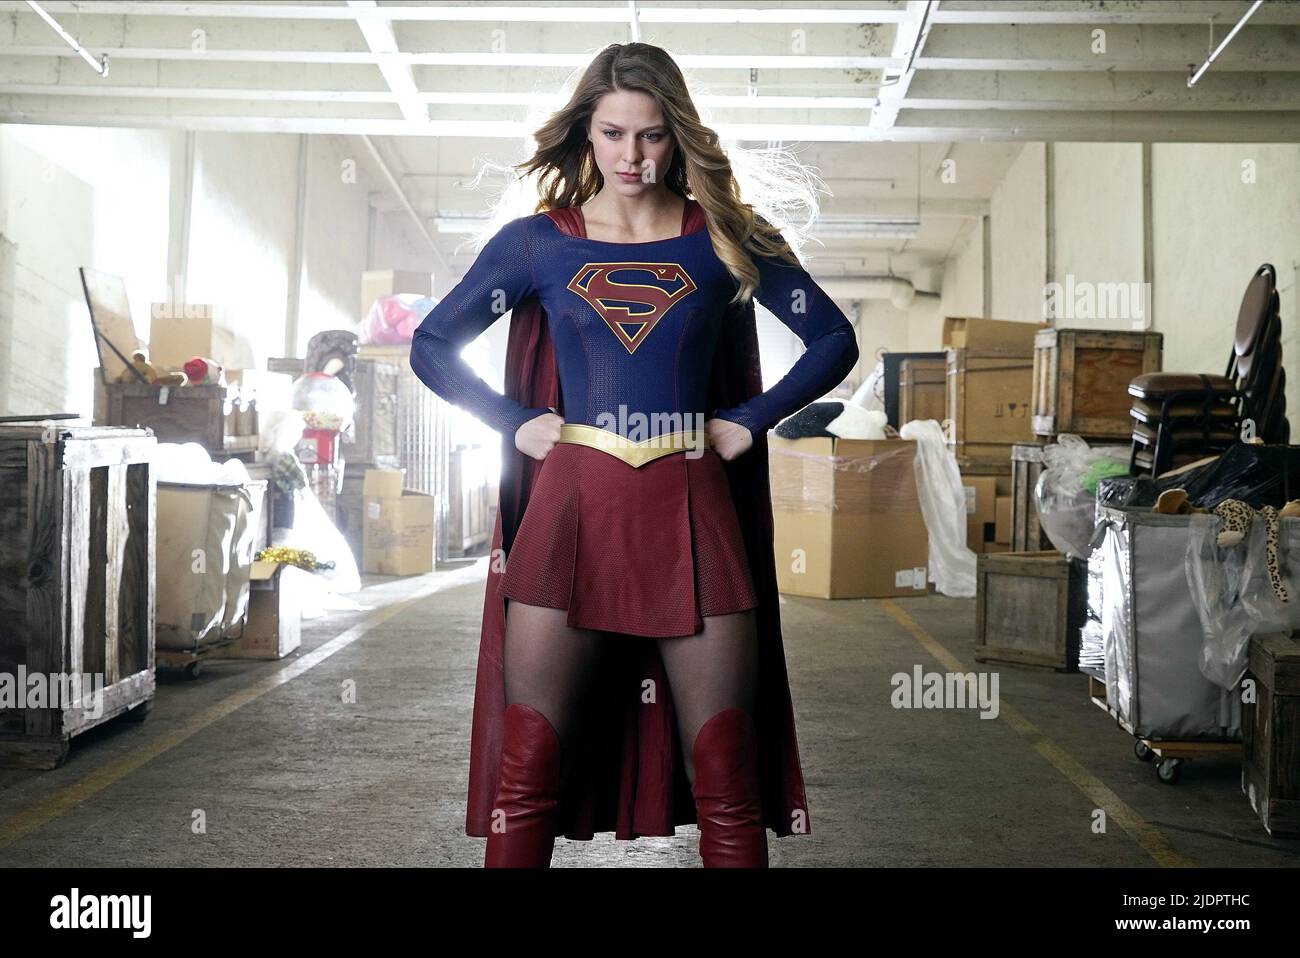 Supergirl costume immagini e fotografie stock ad alta risoluzione - Alamy